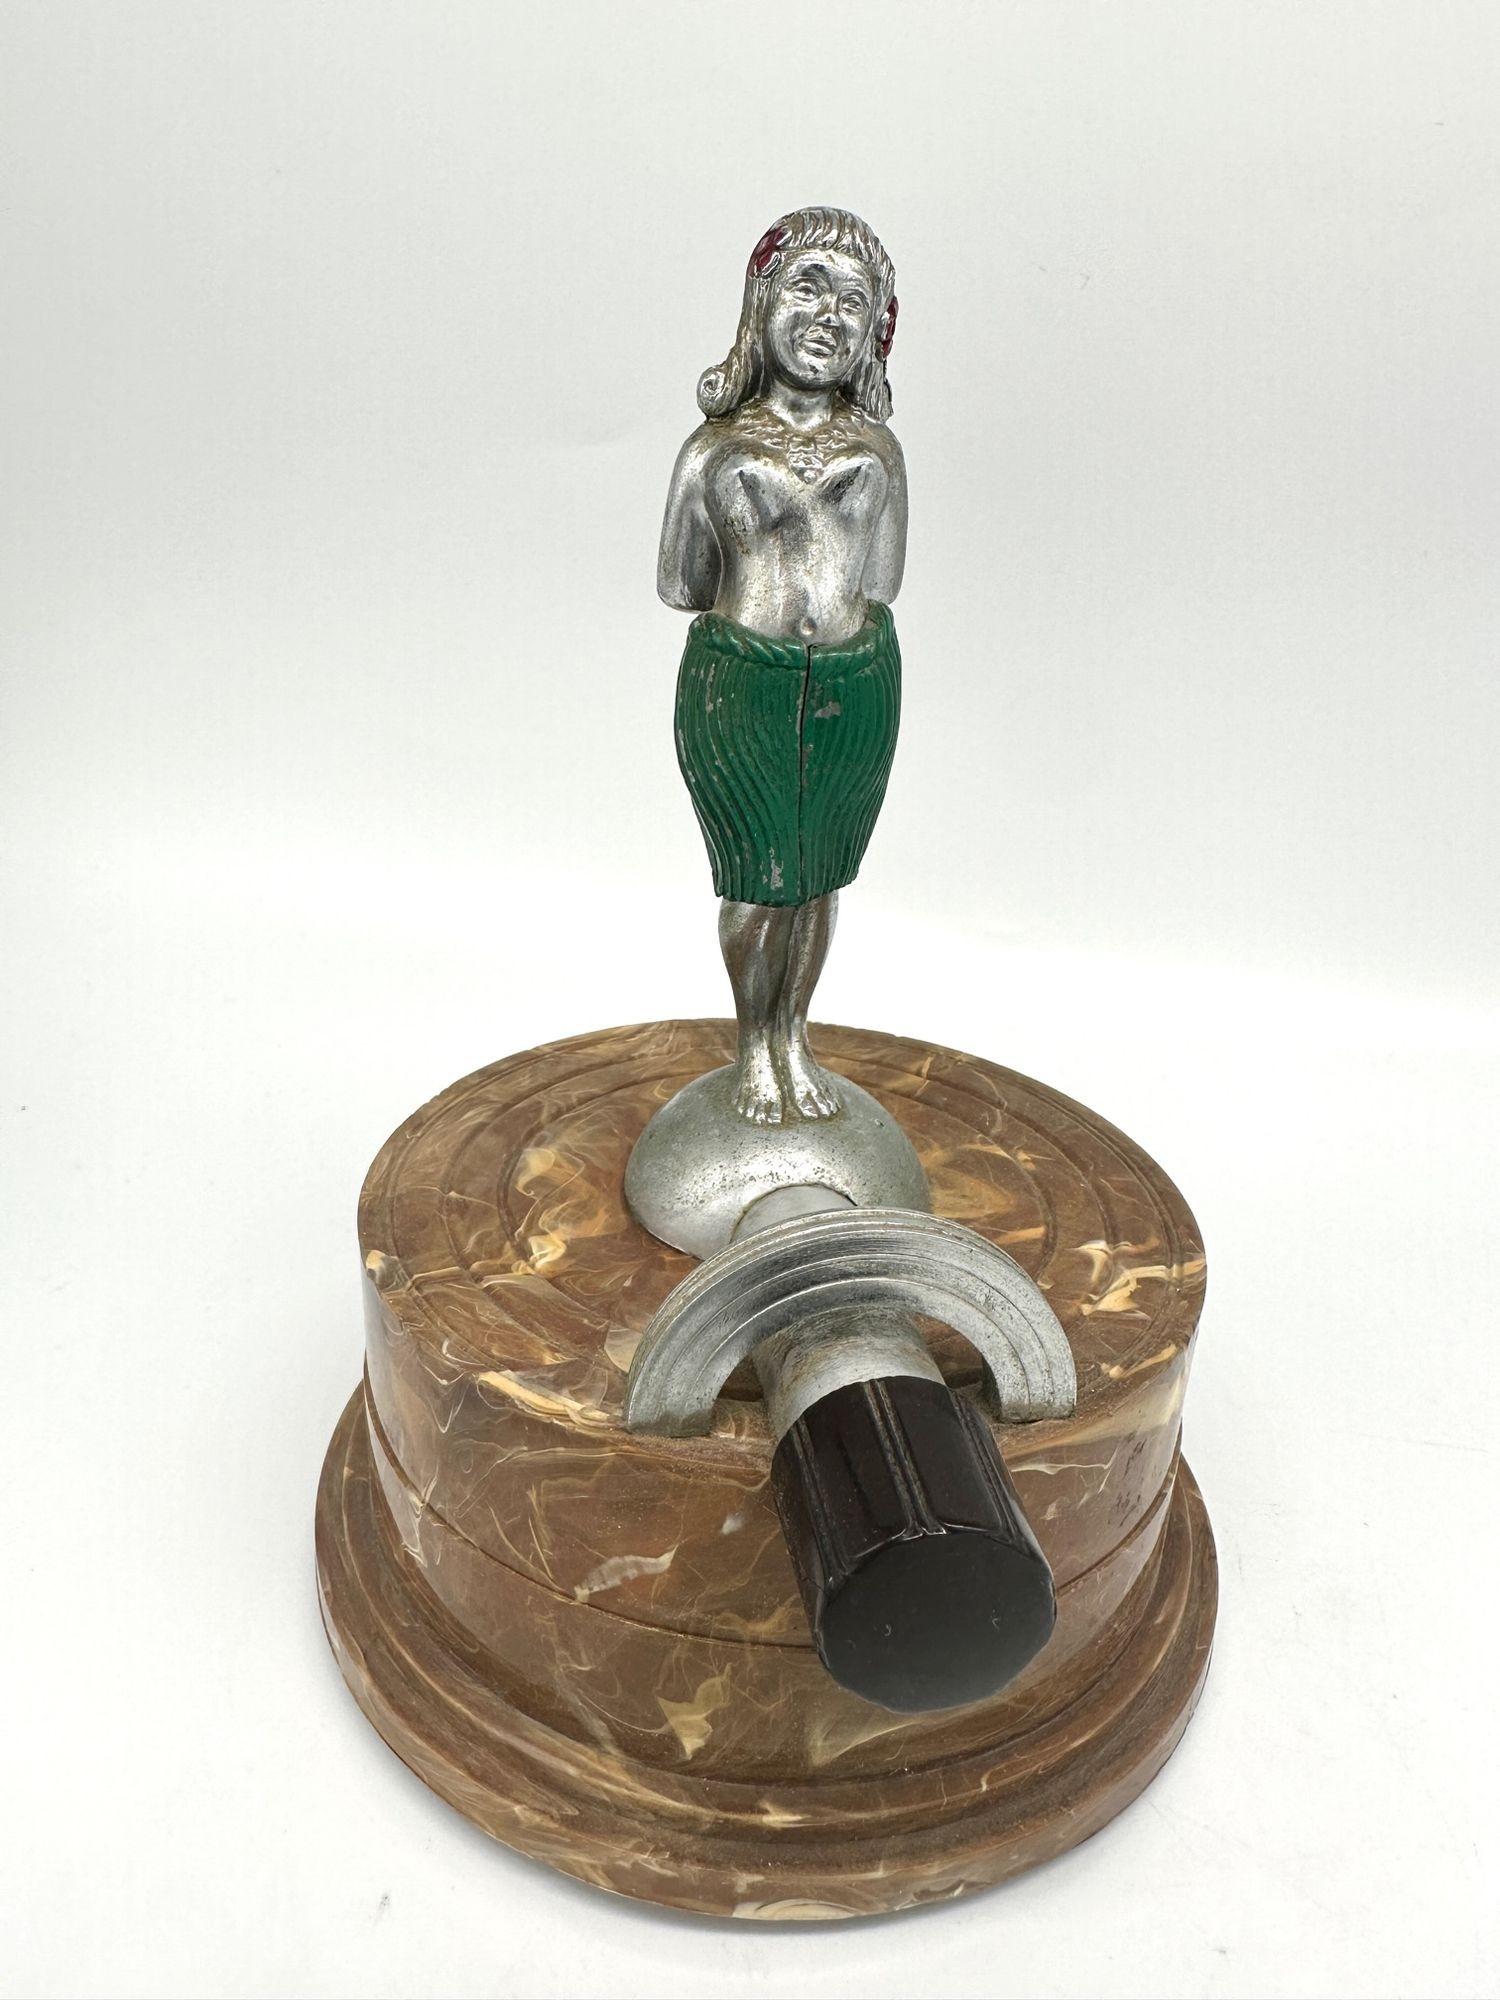 Ce briquet de table vintage de la société Arrow est extrêmement rare : un modèle de Hula Girl nue en métal chromé, avec une base en bakélite. La base contient un briquet à flamme silencieux innovant, qui illustre les débuts de la technologie des